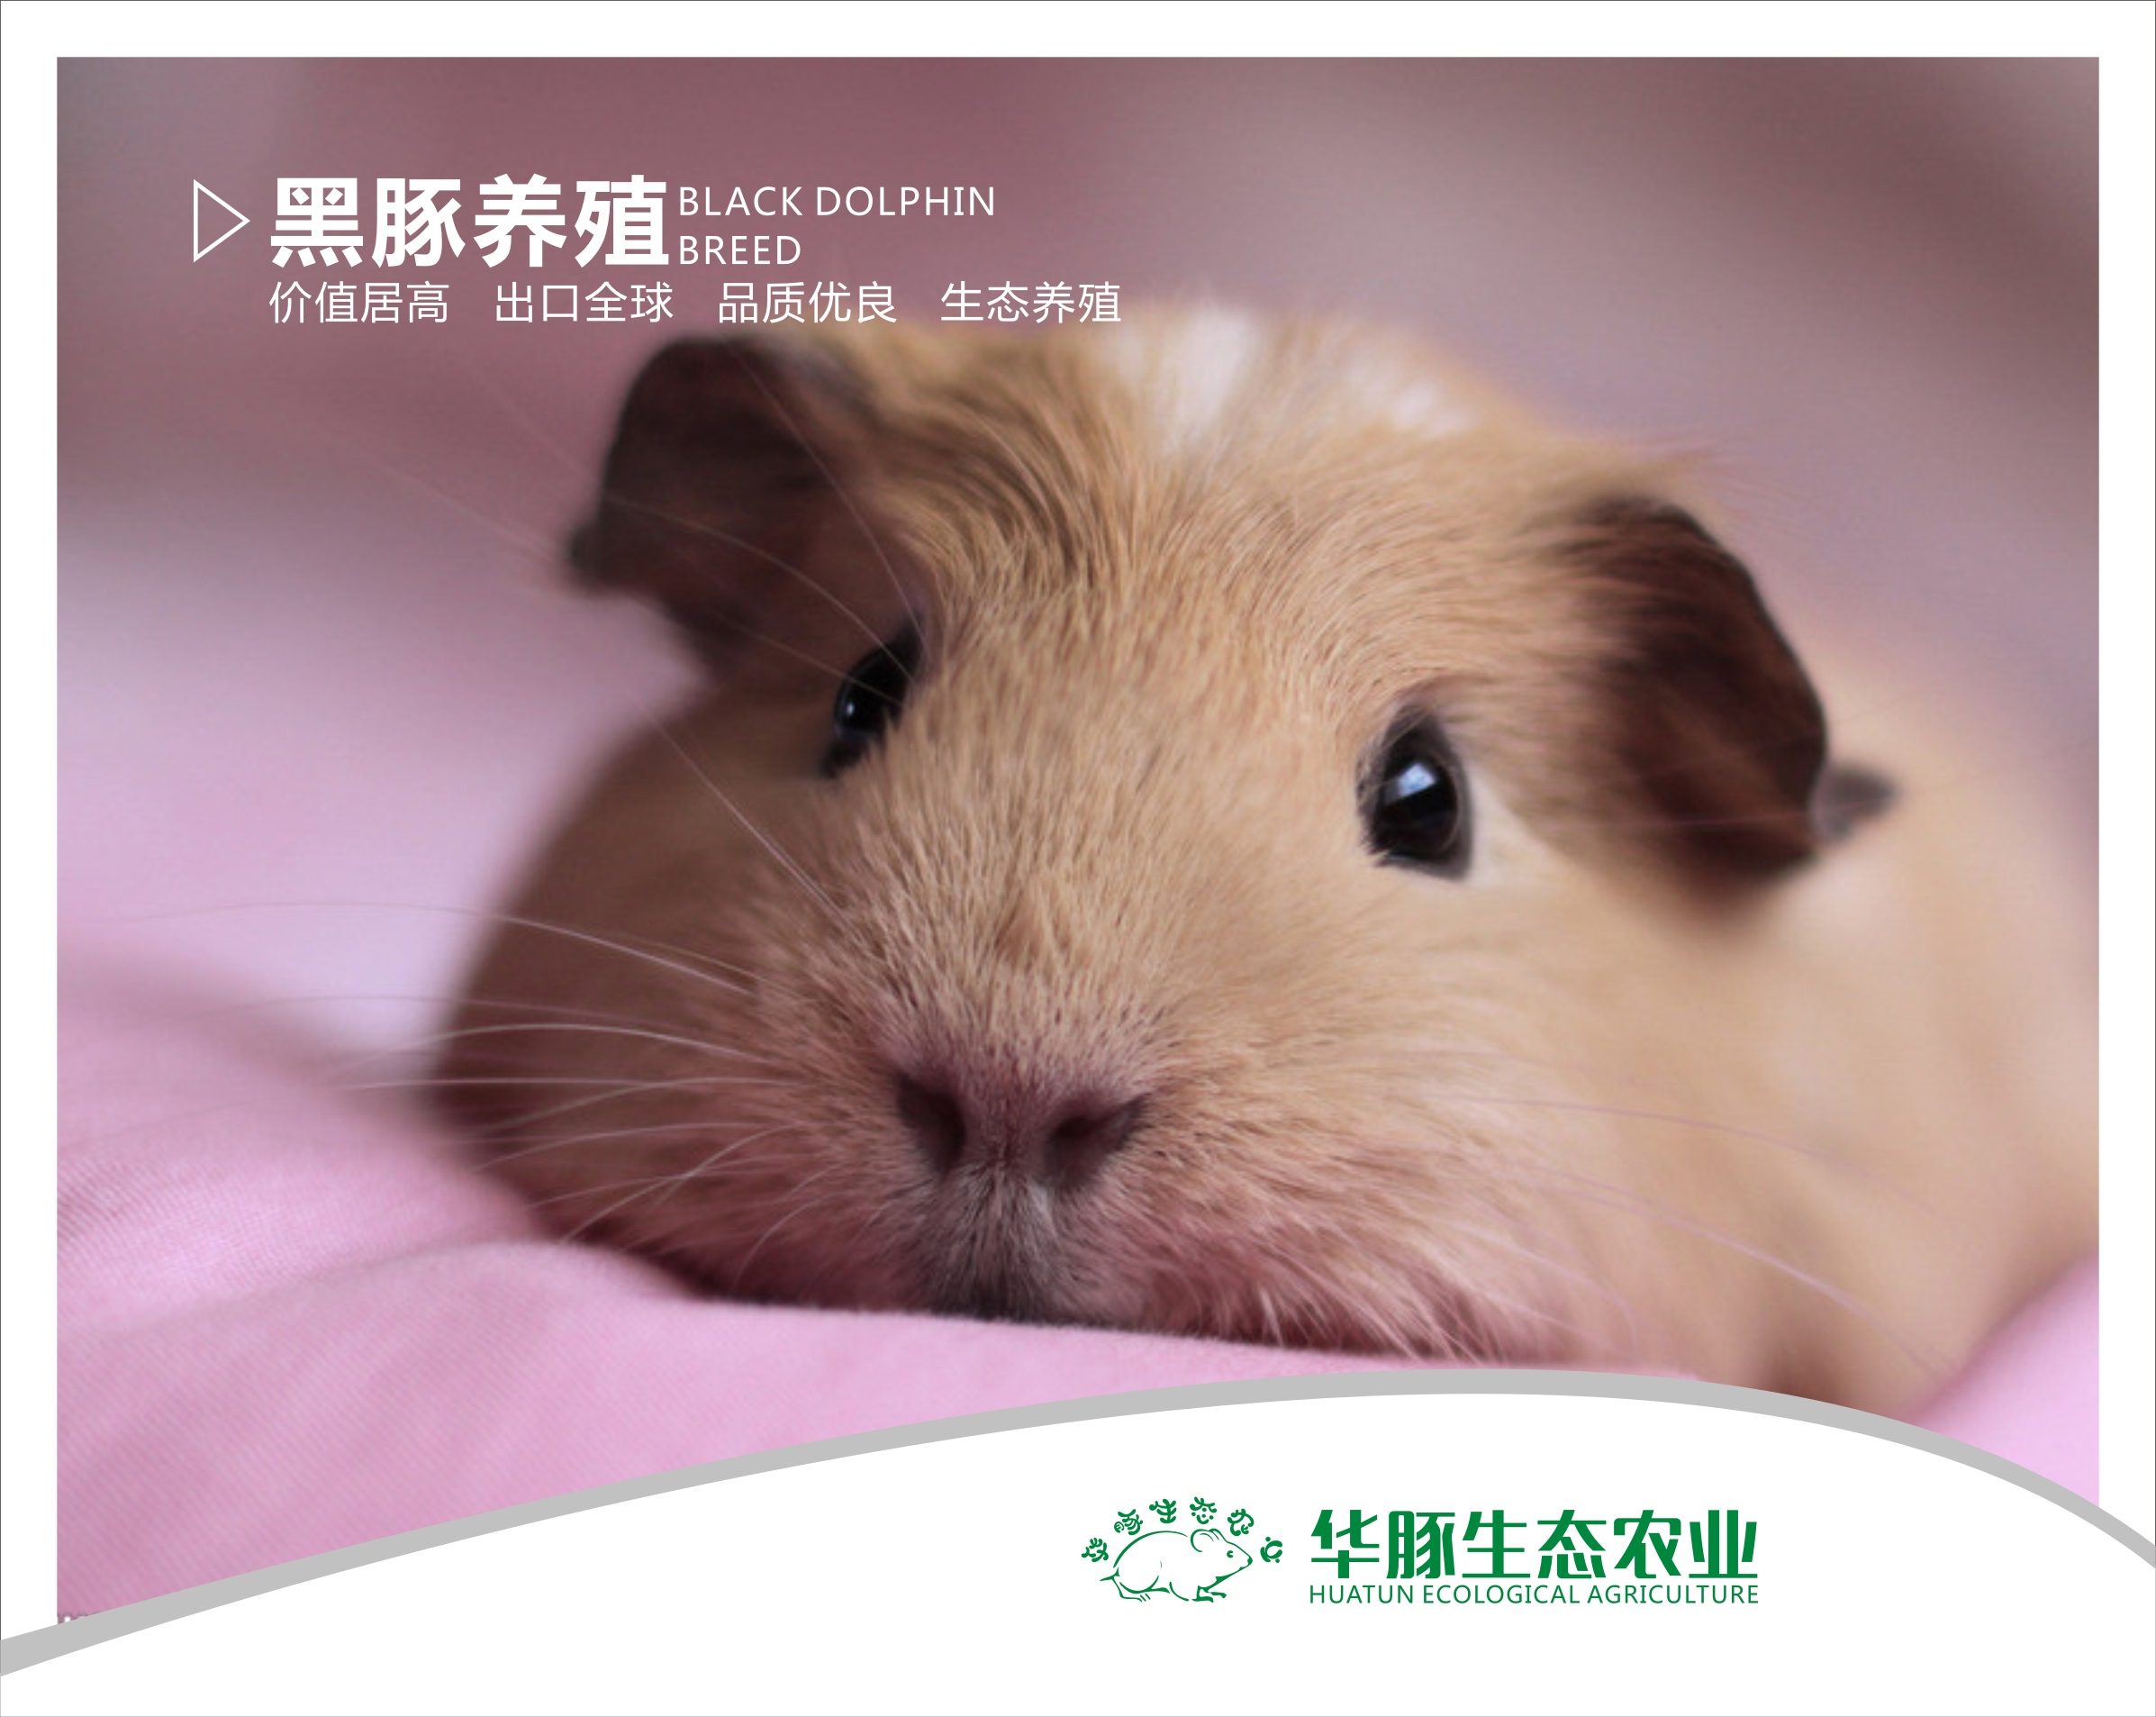 华豚生态农业彩豚鼠的养殖技术2019华豚生态农业彩豚鼠的养殖技术